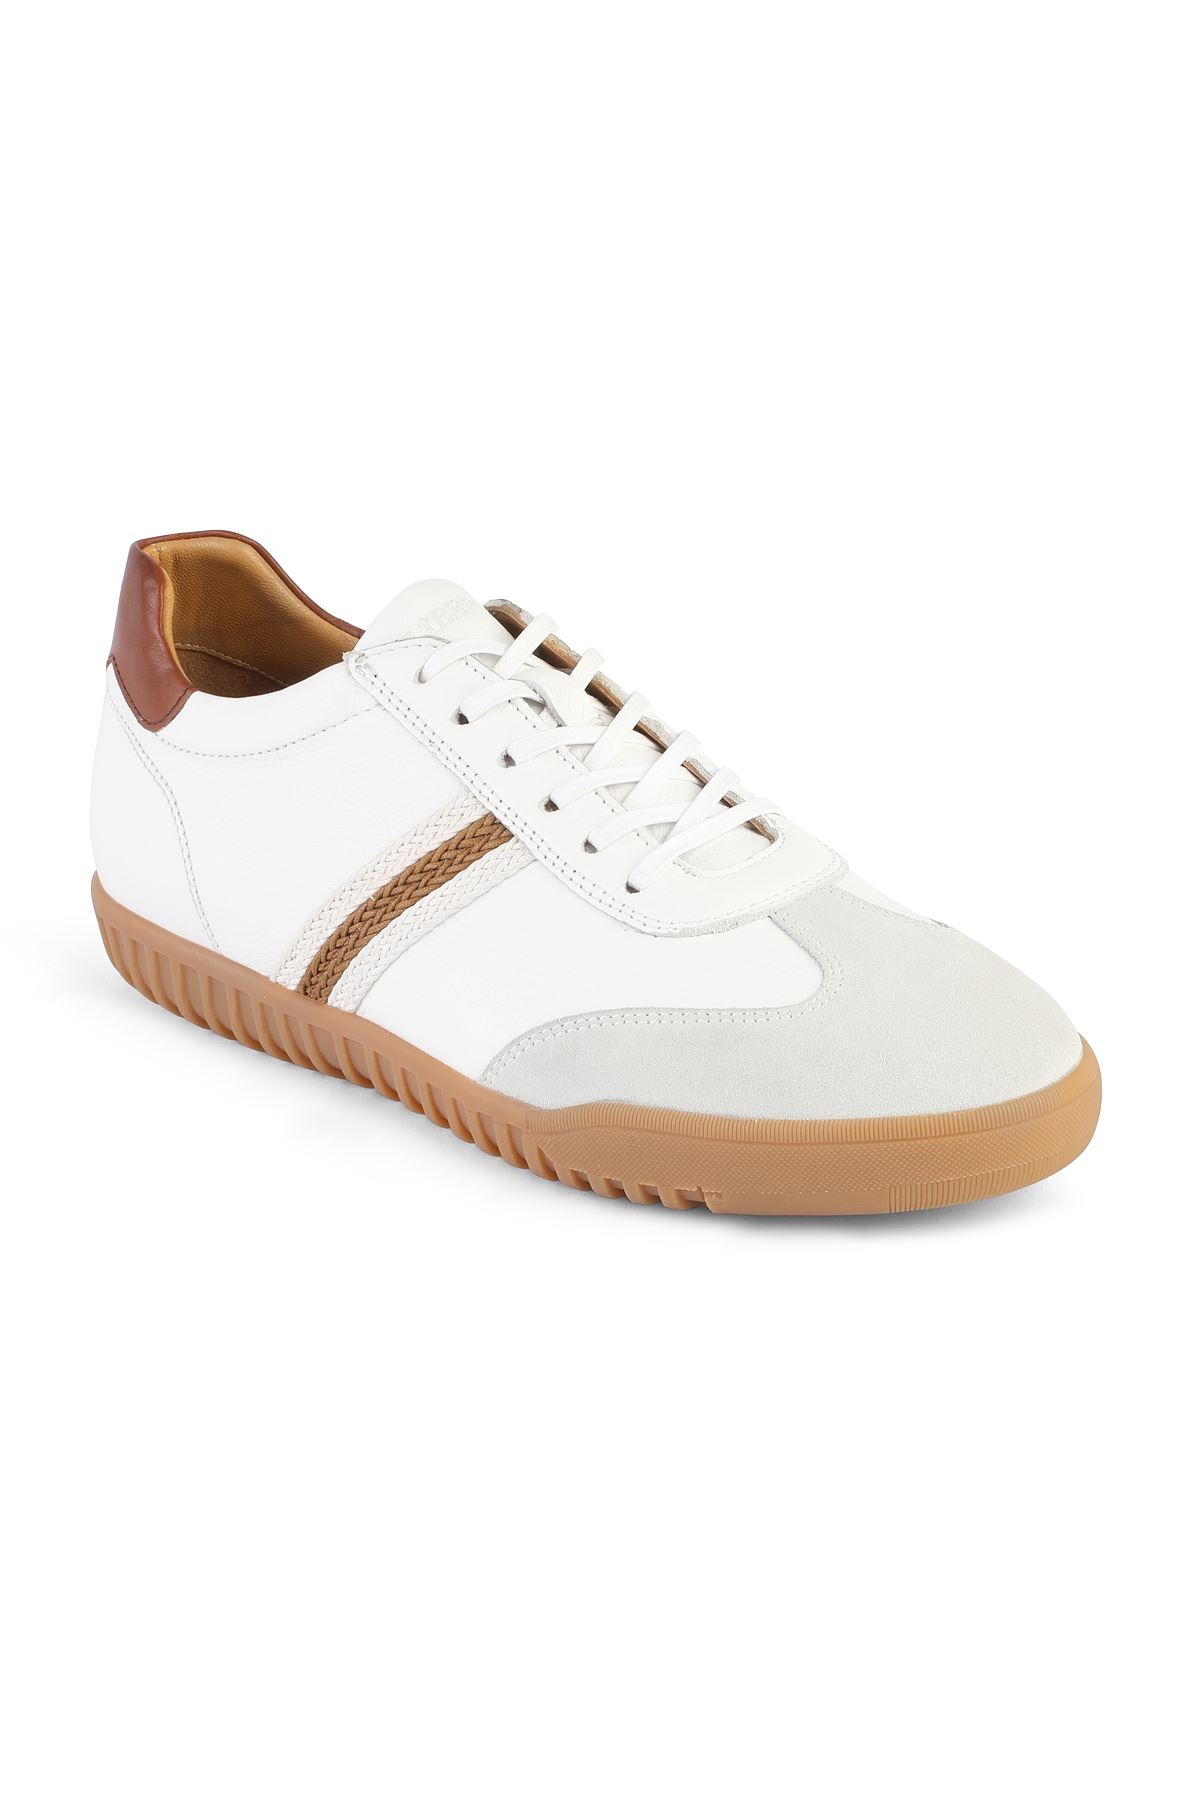 Libero 3422 White Sports Shoes